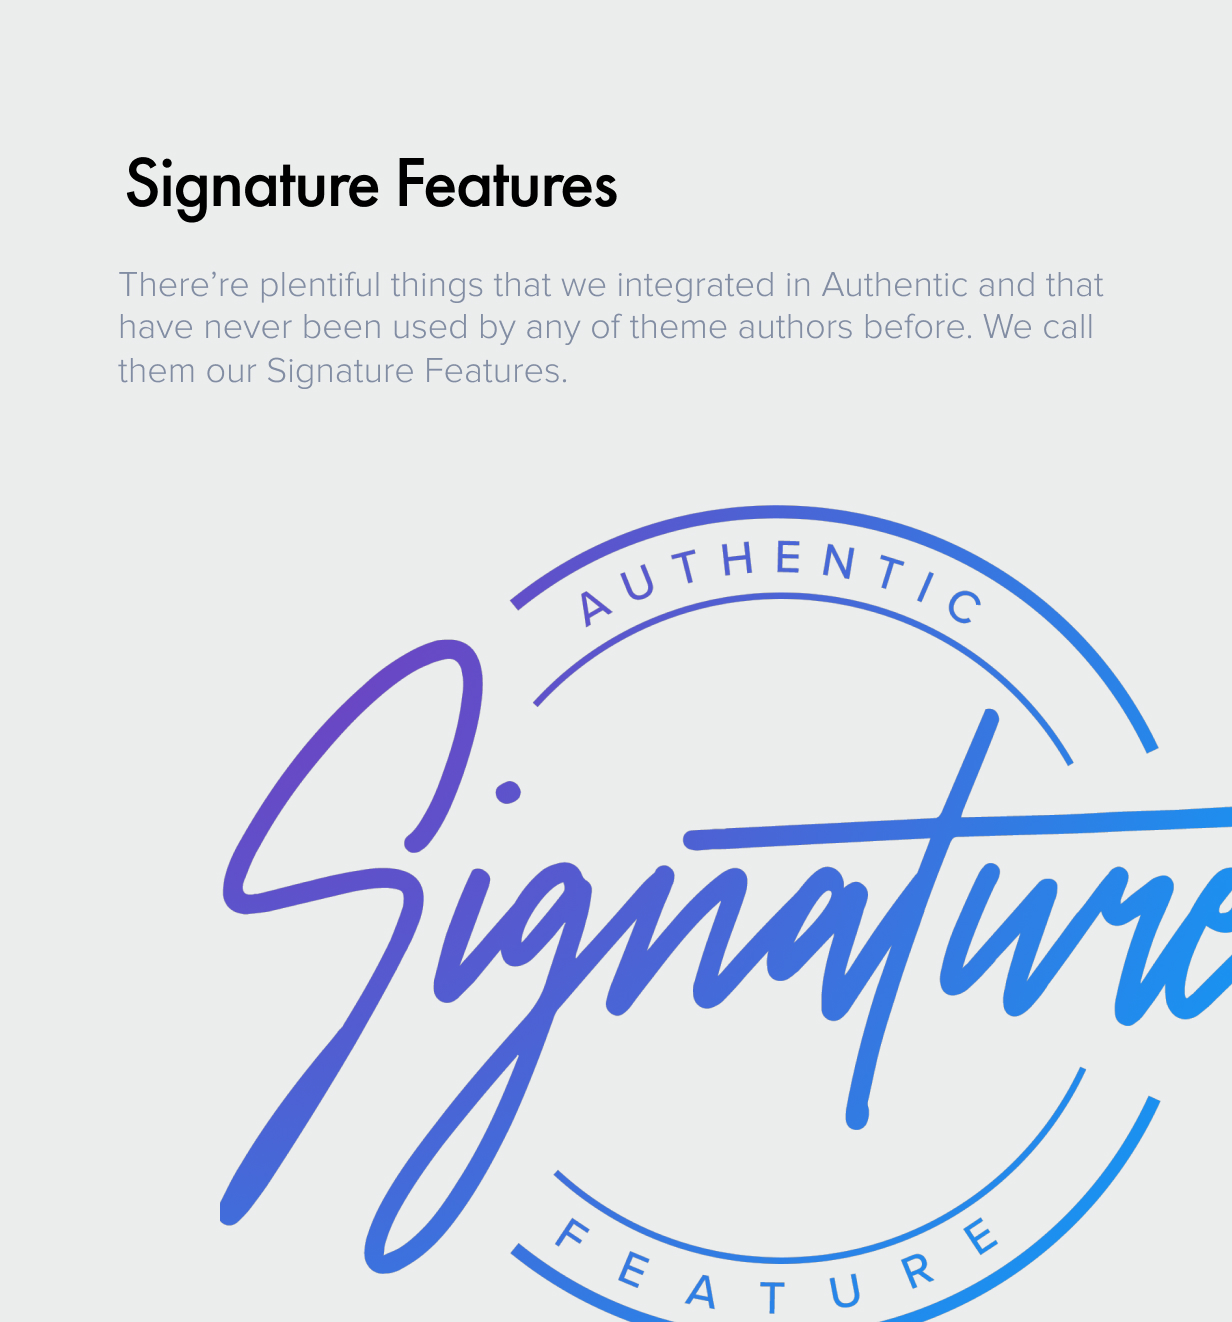 Signature Features